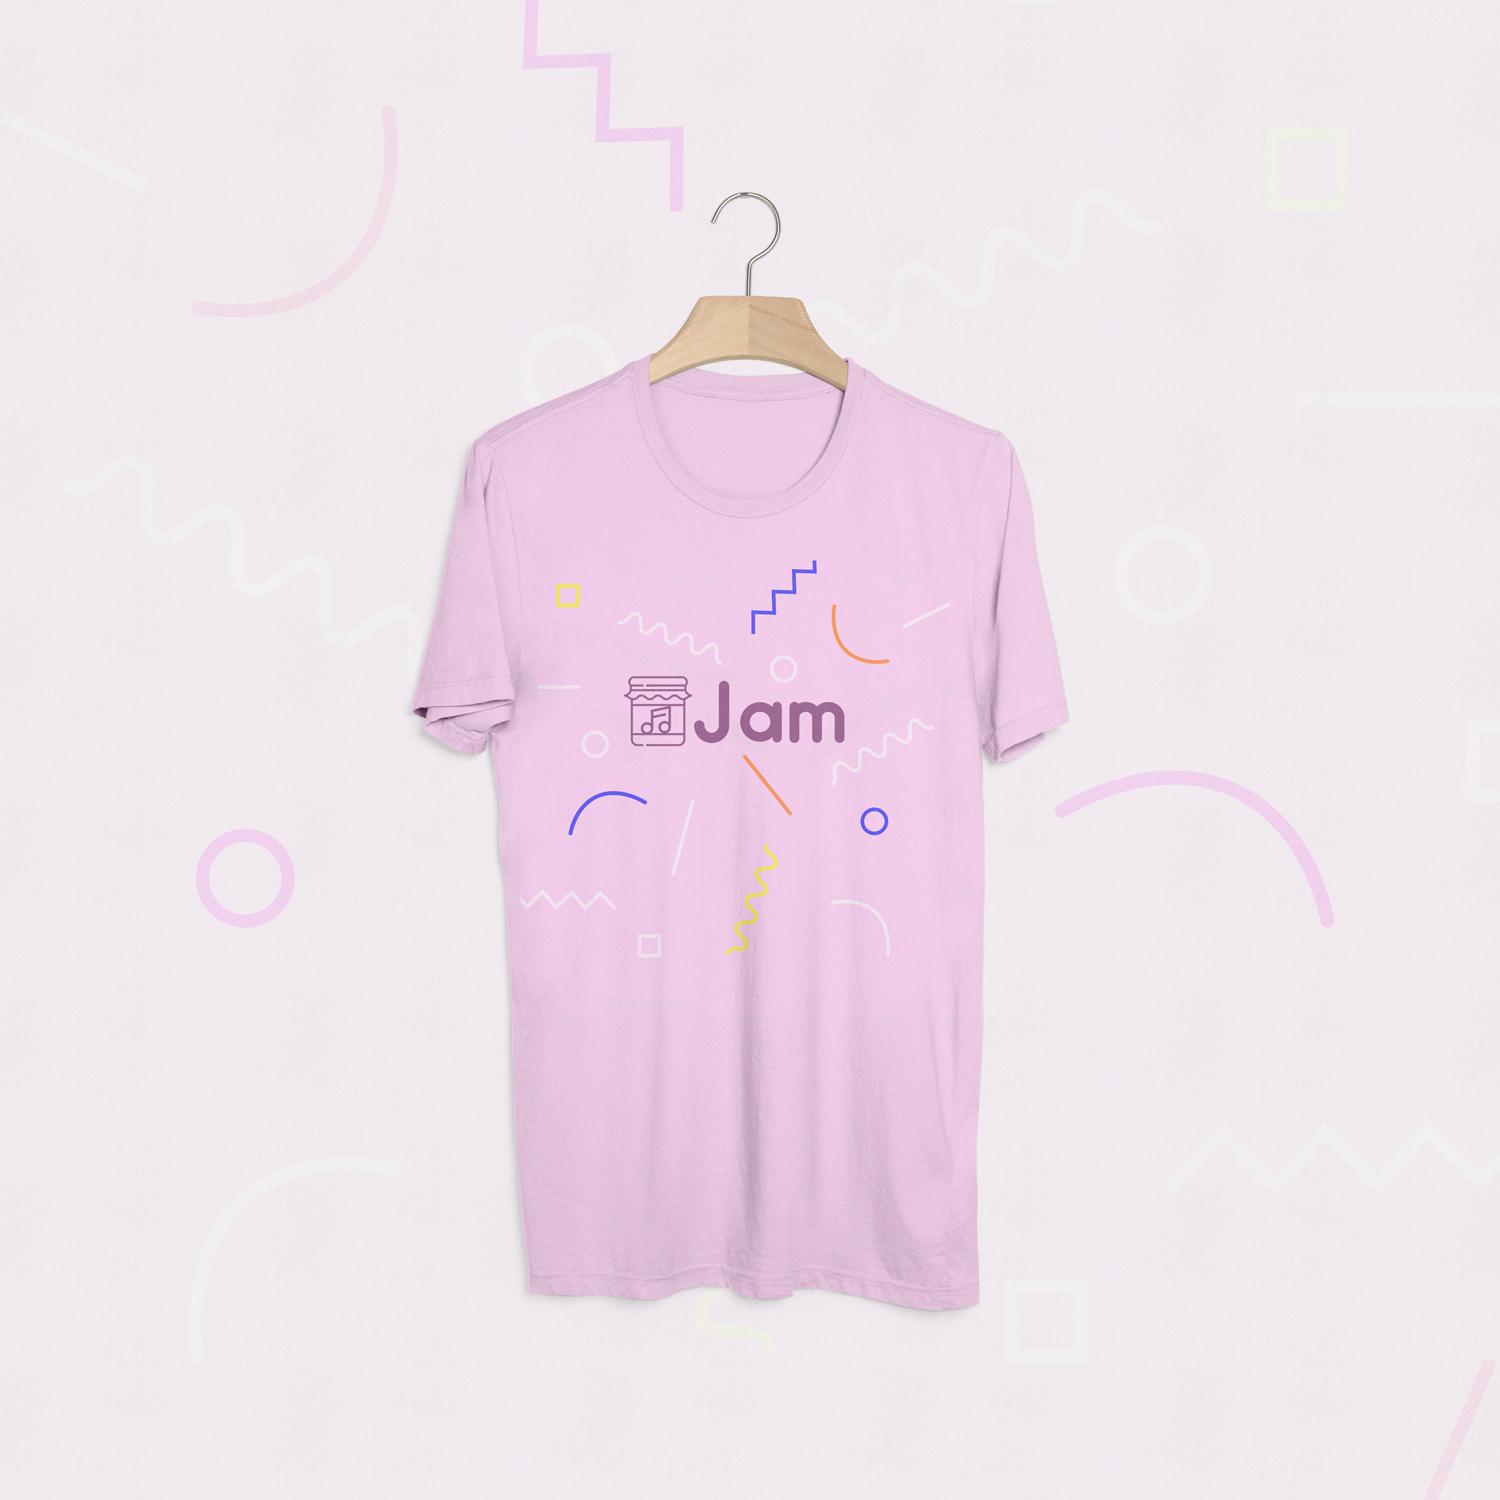 Jam T-Shirt Pink